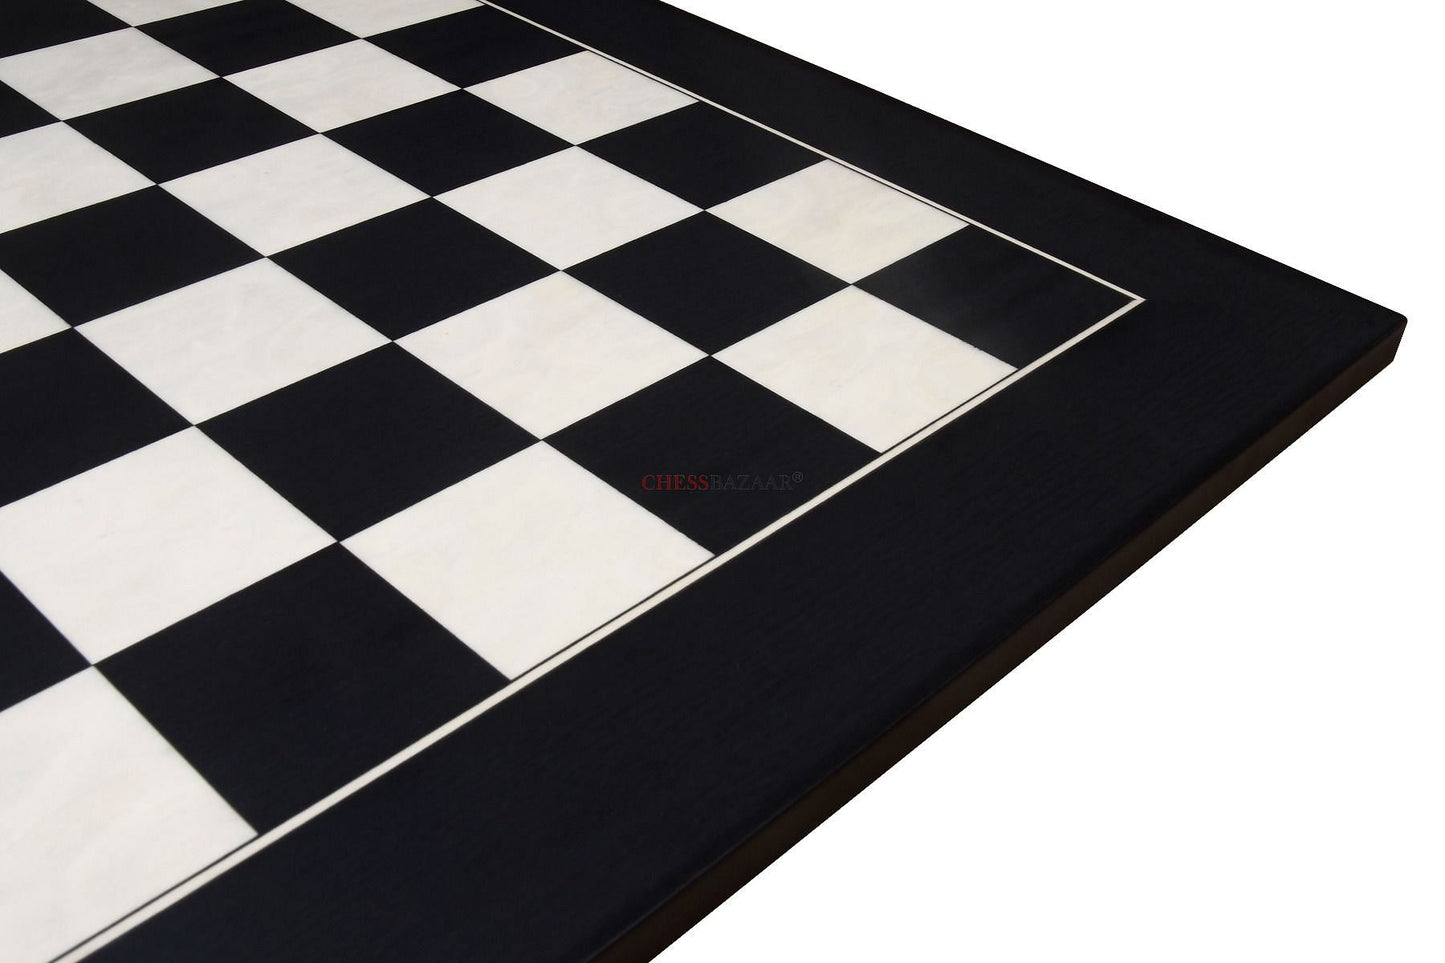 Wooden Deluxe Black Anigre Maple Matte Finish Chess Board 18" - 45 mm